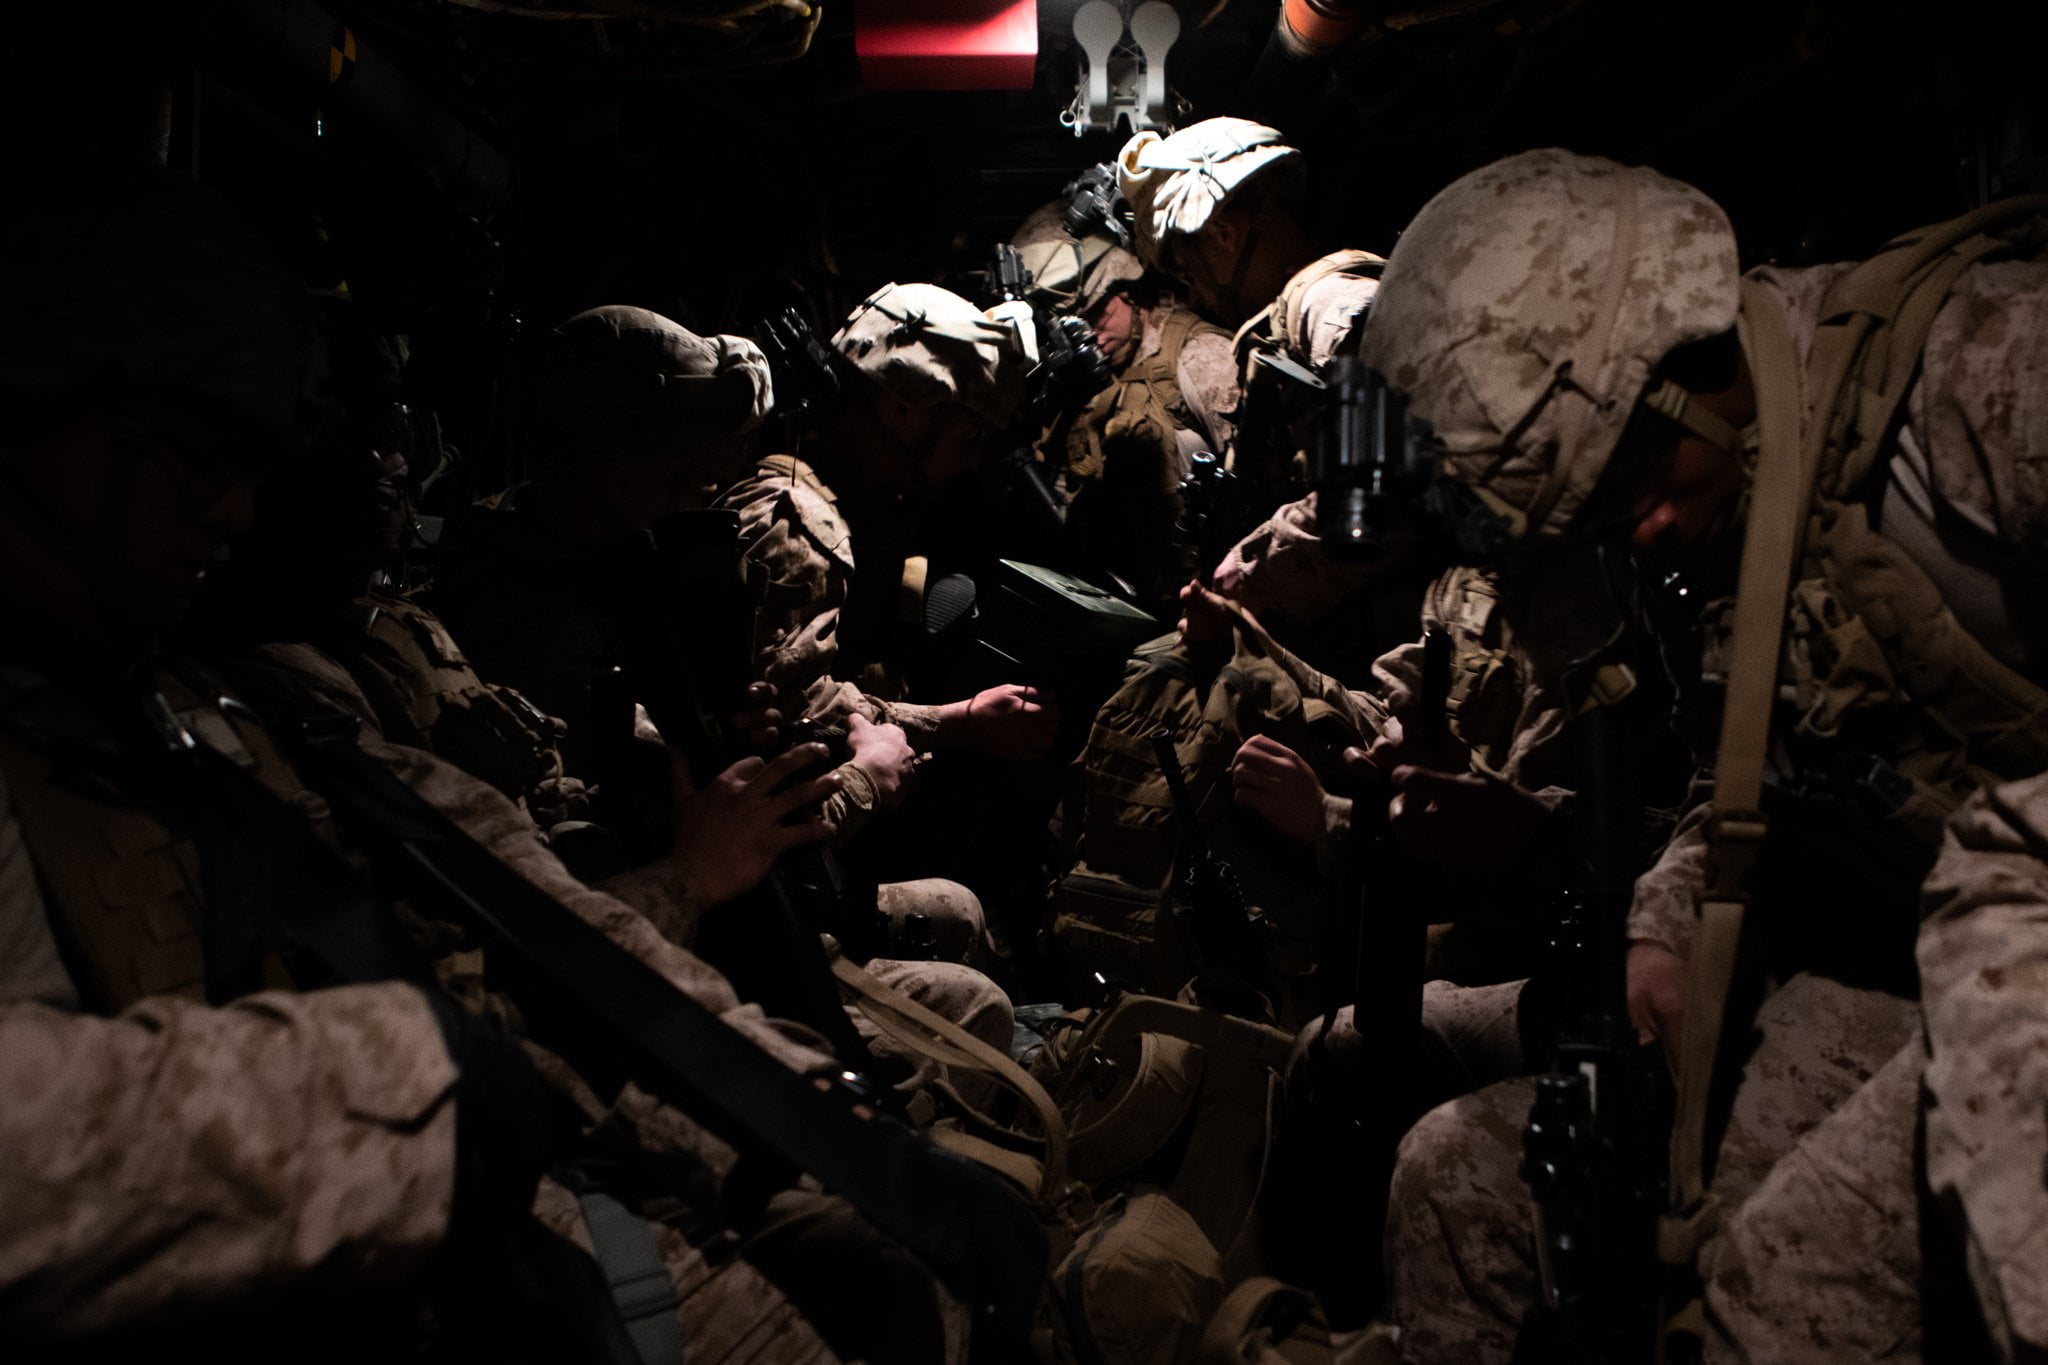 Американские солдаты в Ираке 1991. Трупы американских солдат. Где сейчас идет оно